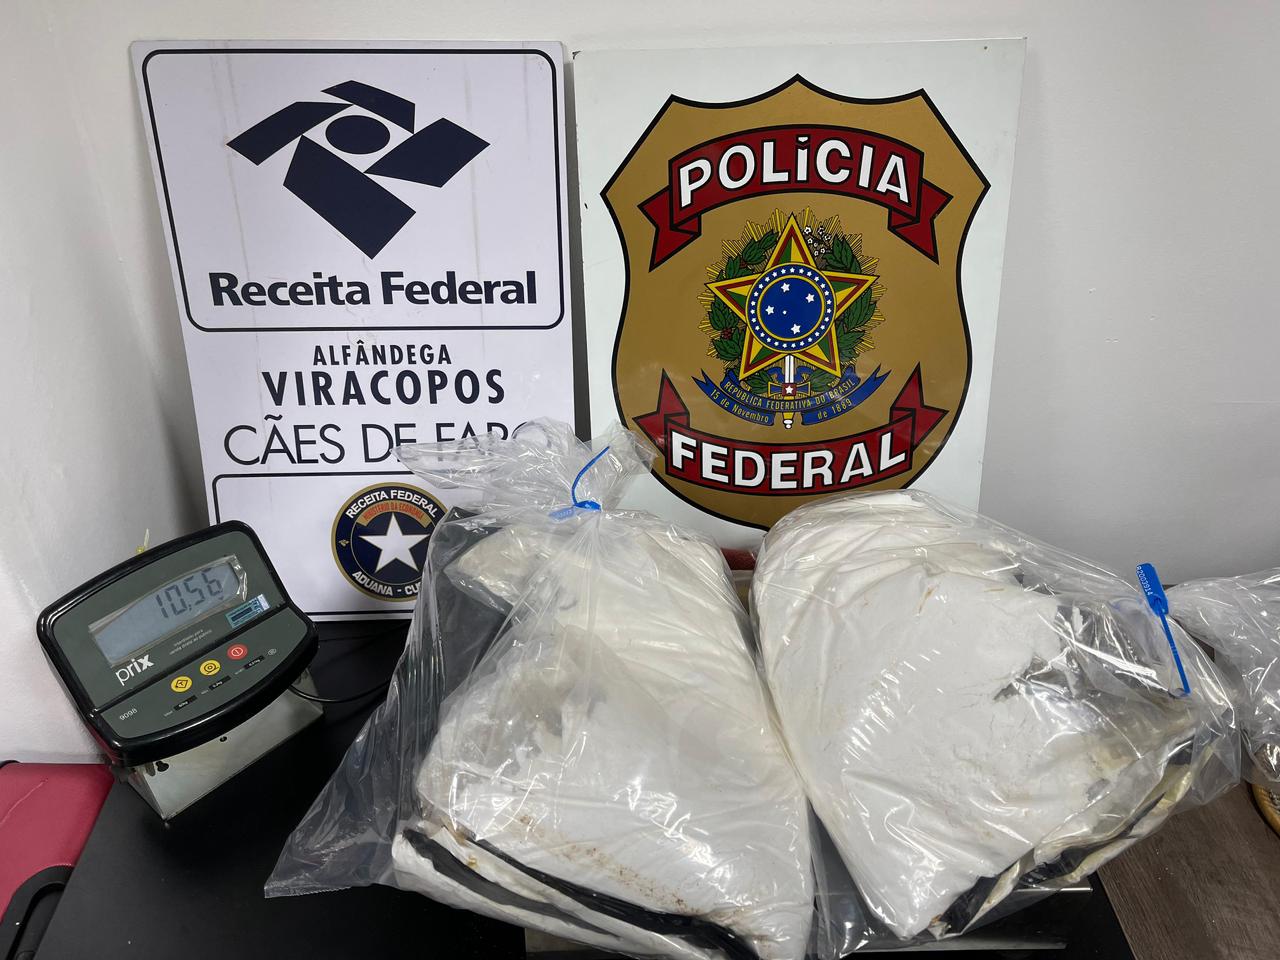 Tentativa de Embarque com Cocaína em Viracopos resulta em Prisão de Dois Passageiros